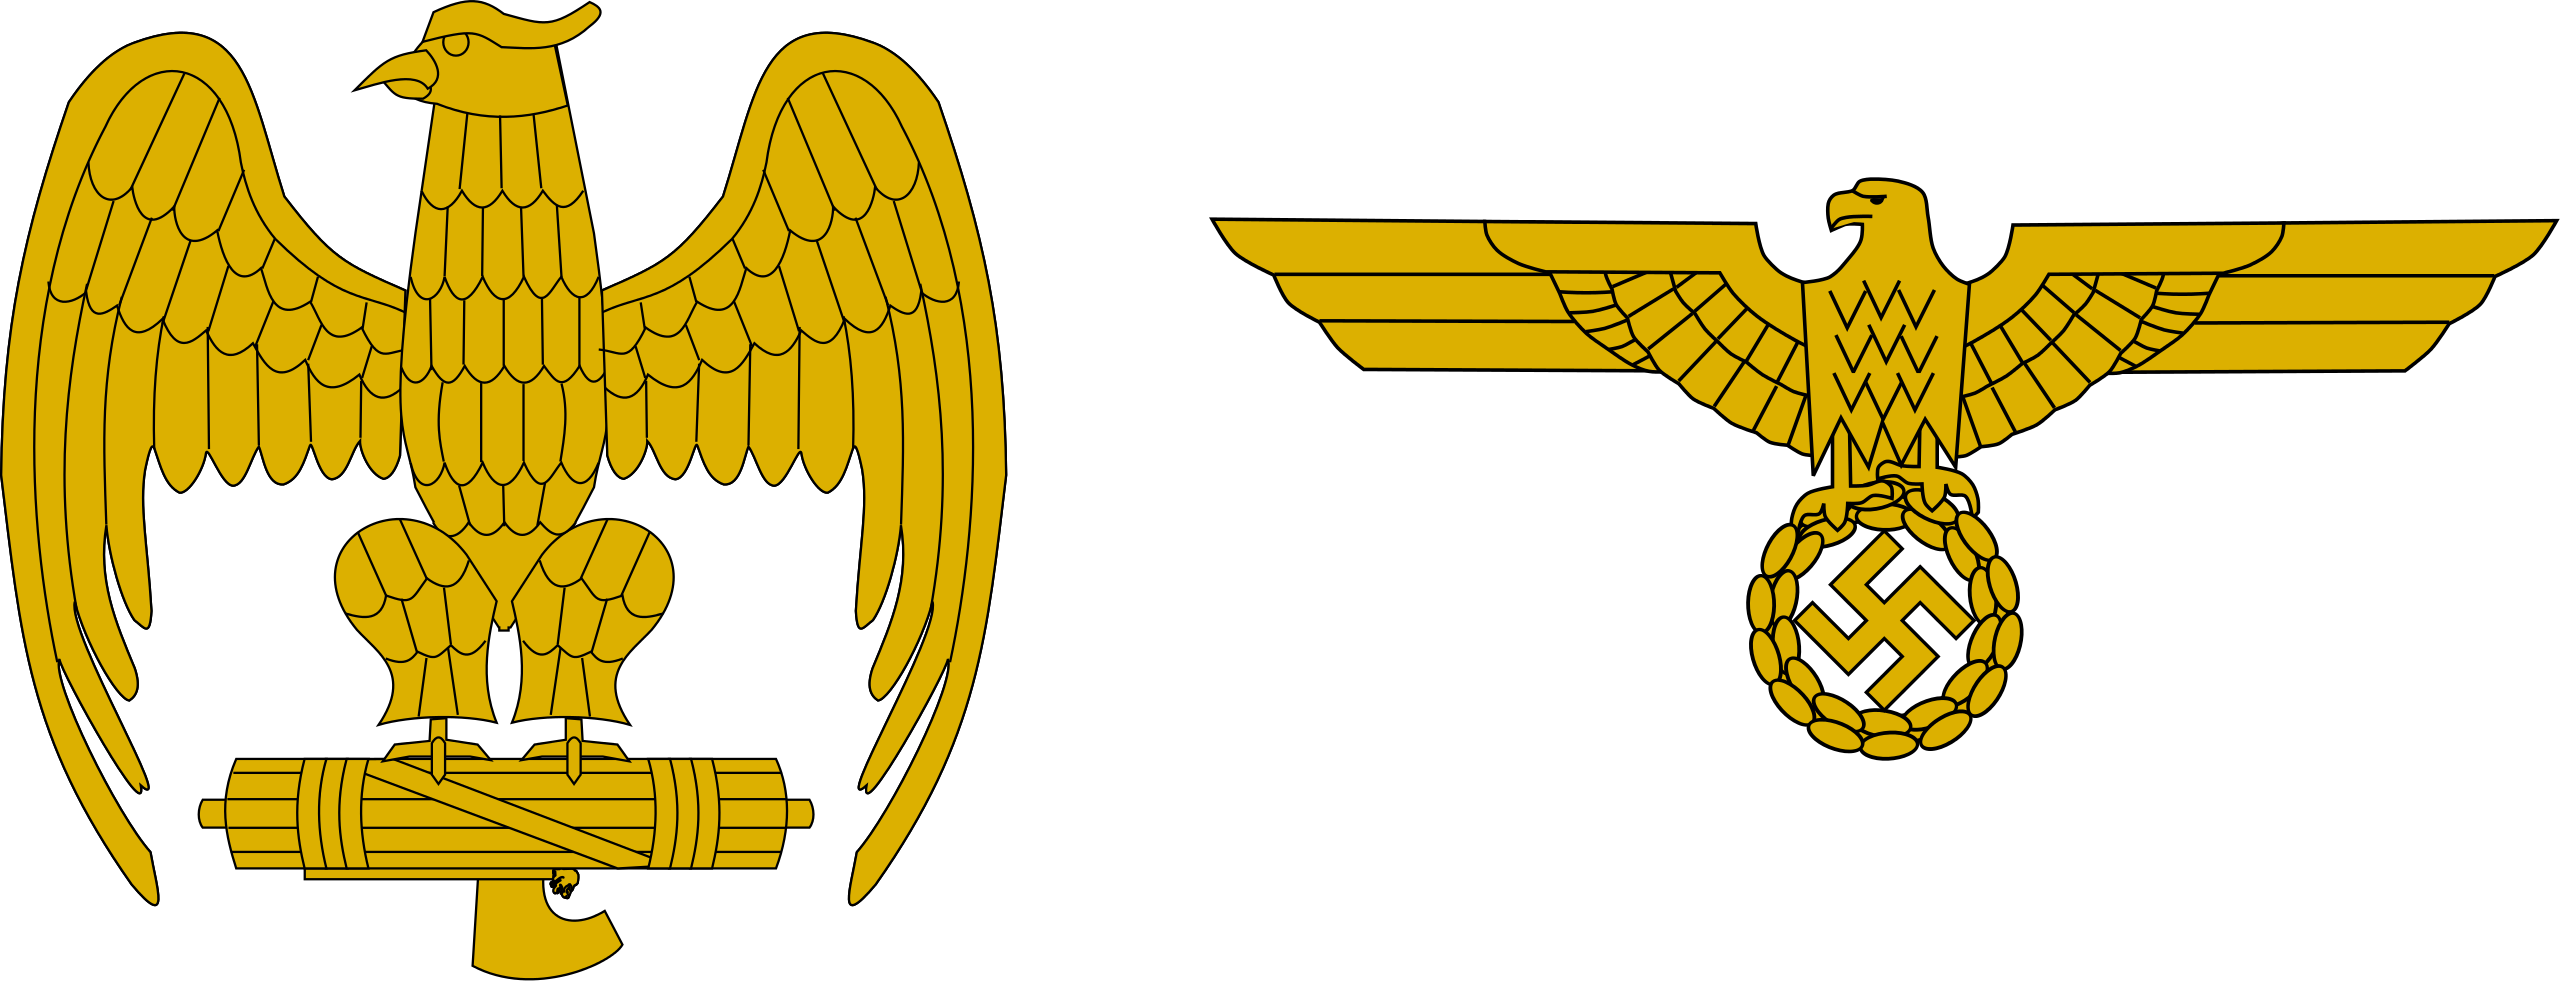 nazi eagle symbol